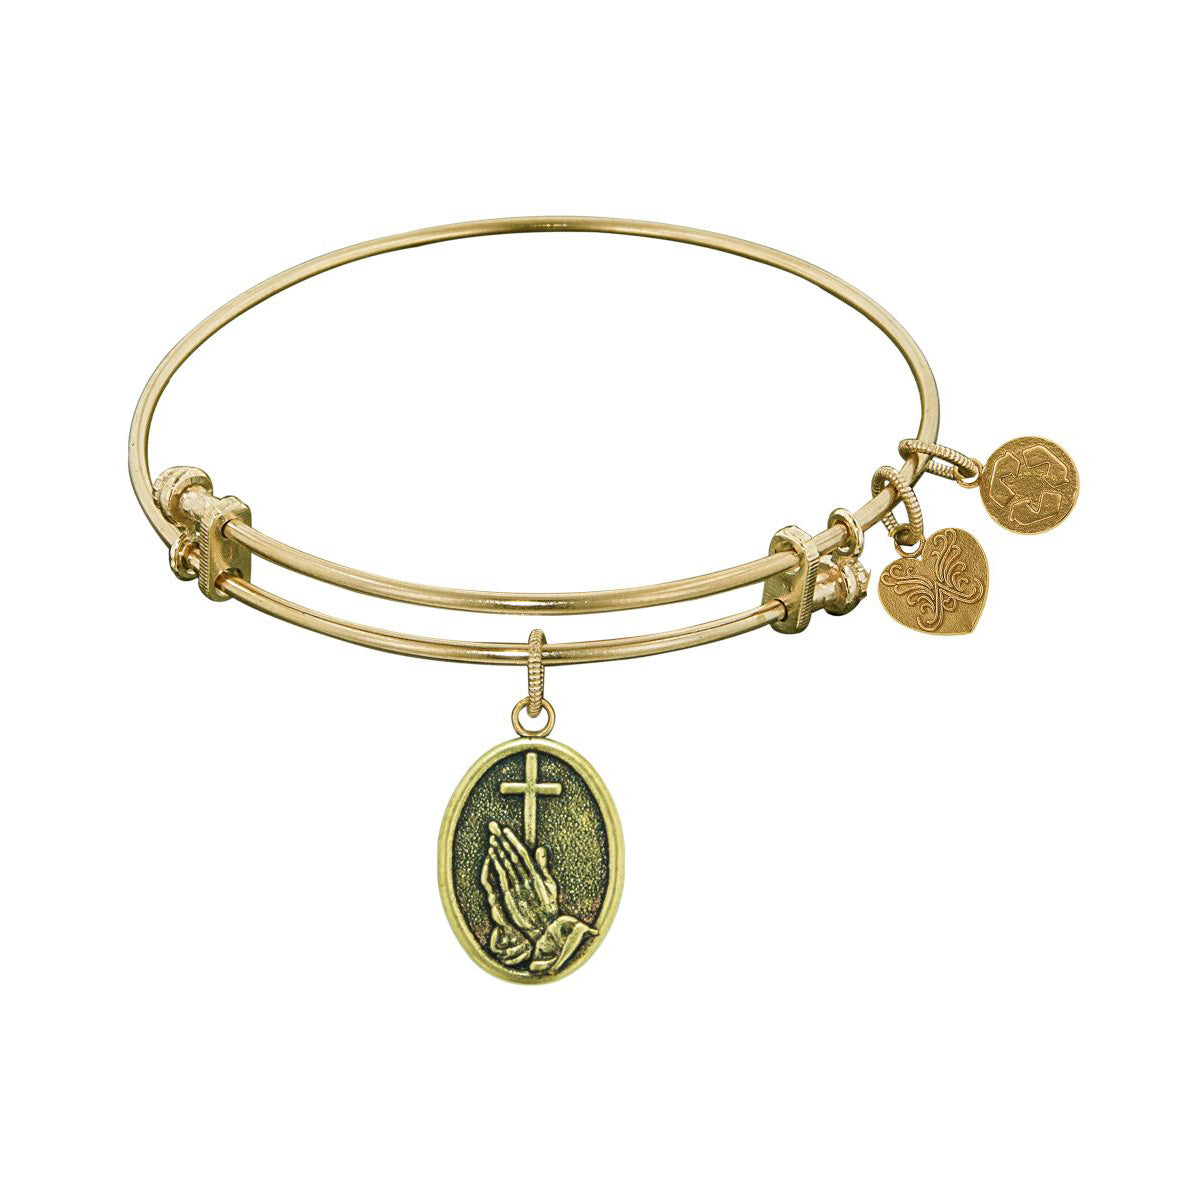 Stipple Finish Brass Faith Angelica Bangle Bracelet, 7.25" fine designer jewelry for men and women